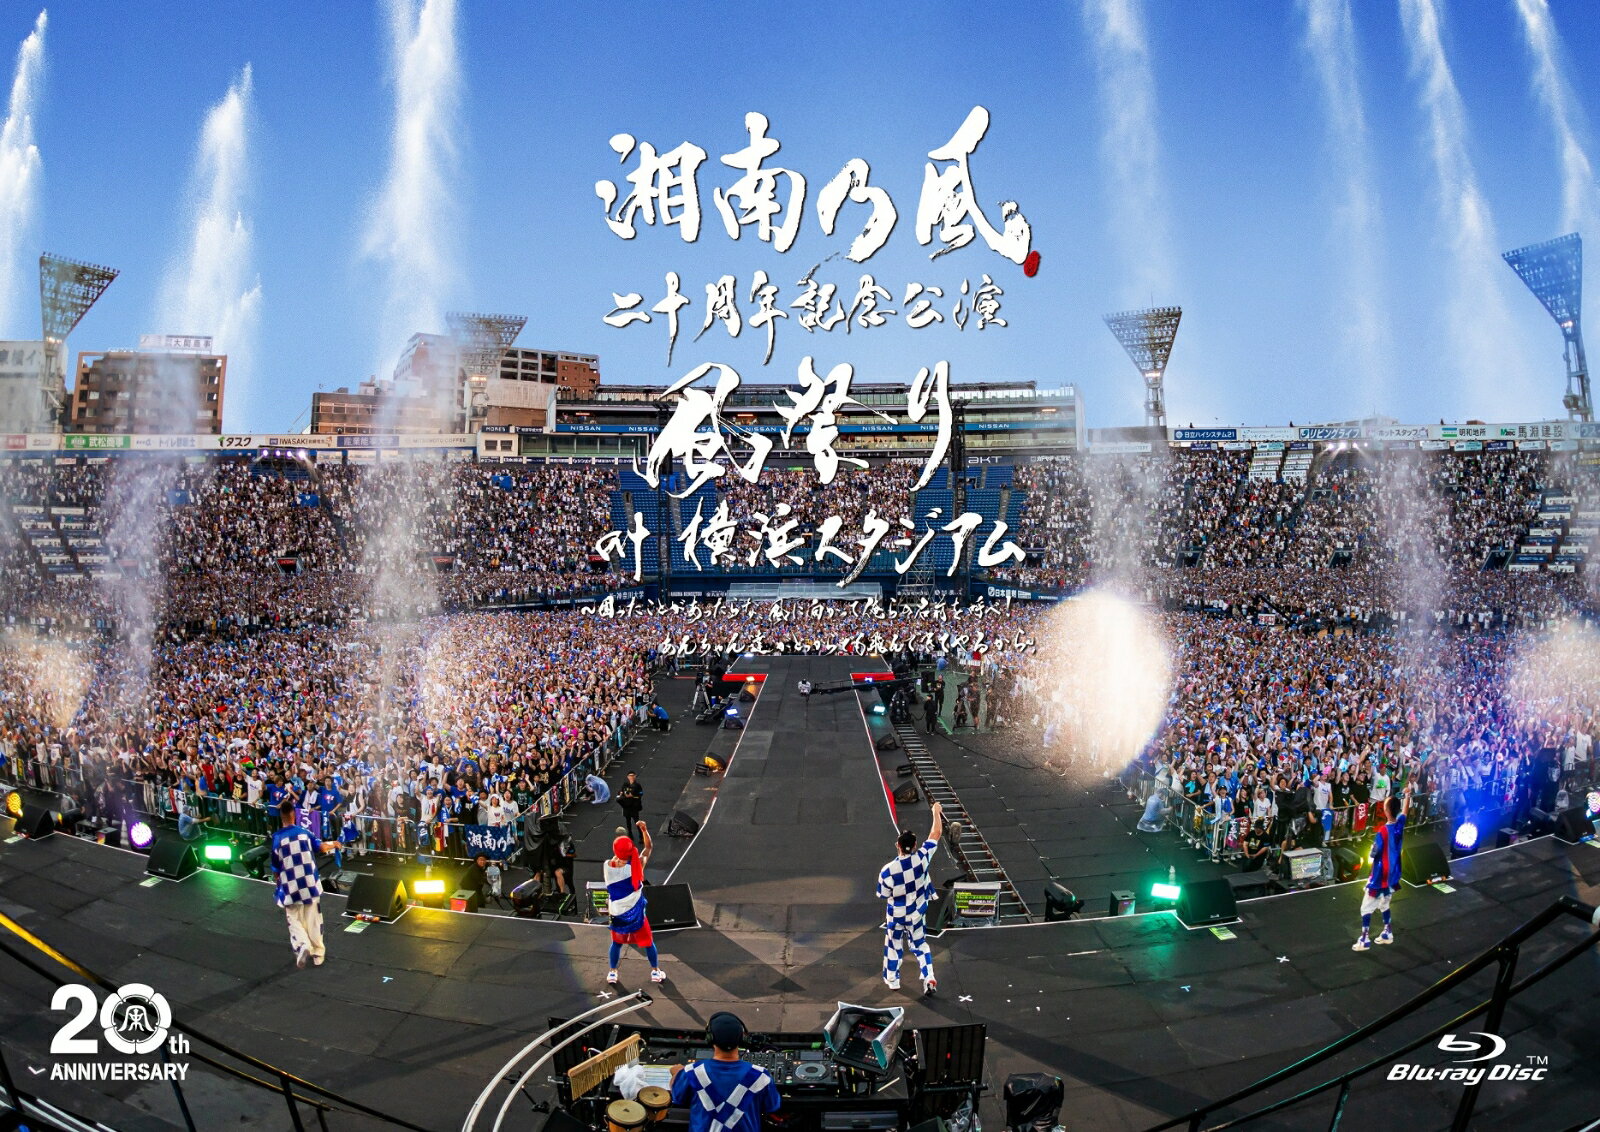 湘南乃風 二十周年記念公演 「風祭り at 横浜スタジアム」 ～困ったことがあったらな、風に向かって俺らの名前を呼べ！あんちゃん達がどっからでも飛んできてやるから～(通常盤Blu-ray) 【Blu-ray】